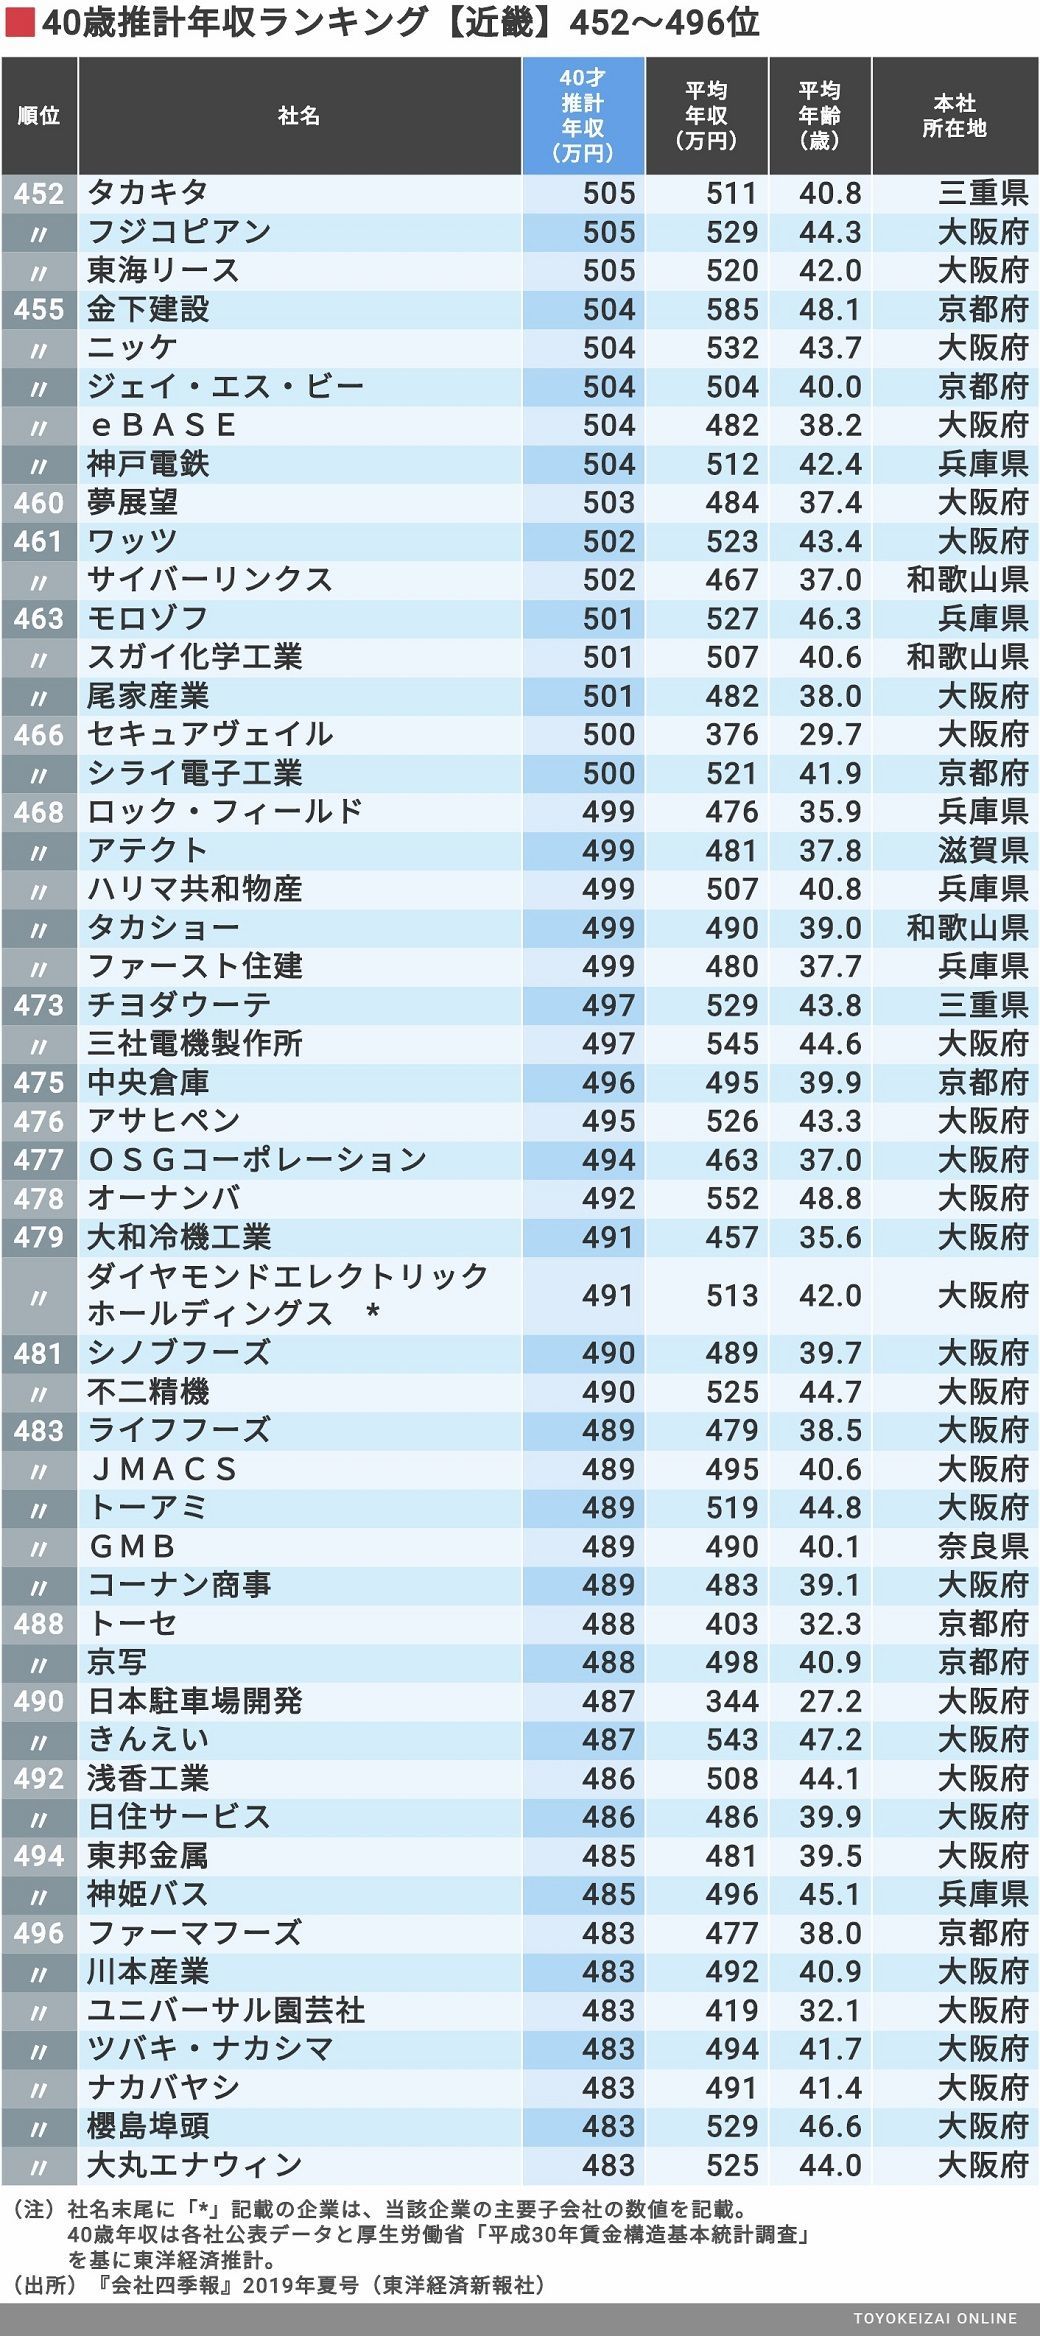 最新 40歳年収 近畿地方587社ランキング 賃金 生涯給料ランキング 東洋経済オンライン 経済ニュースの新基準